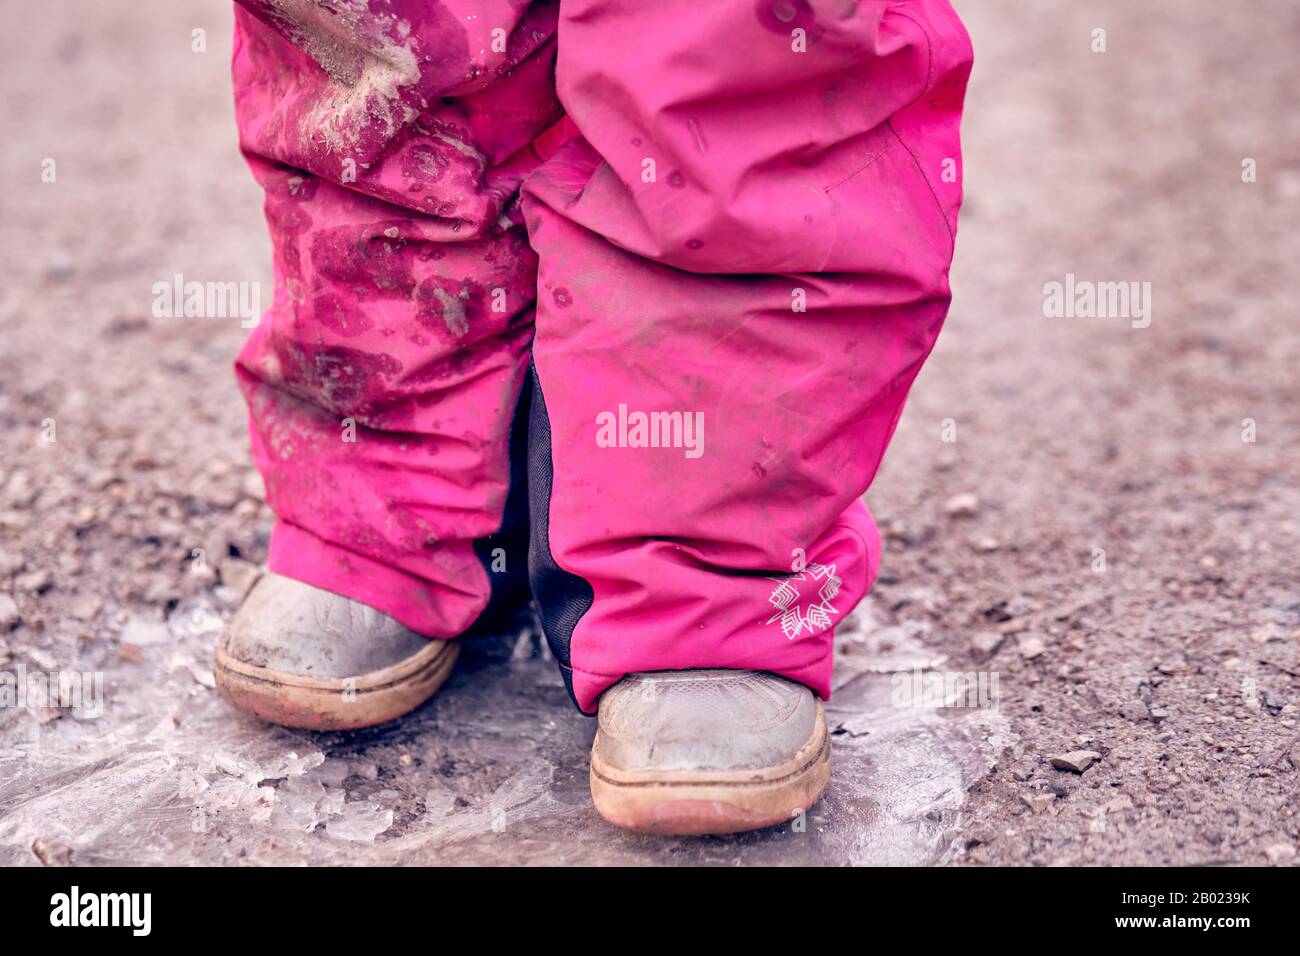 Tiefer Teil eines 4 Jahre alten Kindermädchens in schlammig schmutzig pinkfarbenen Winterhosen, die auf einer gefrorenen Pfütze auf einer Schotterstraße stehen. Im Februar in Deutschland zu sehen. Stockfoto